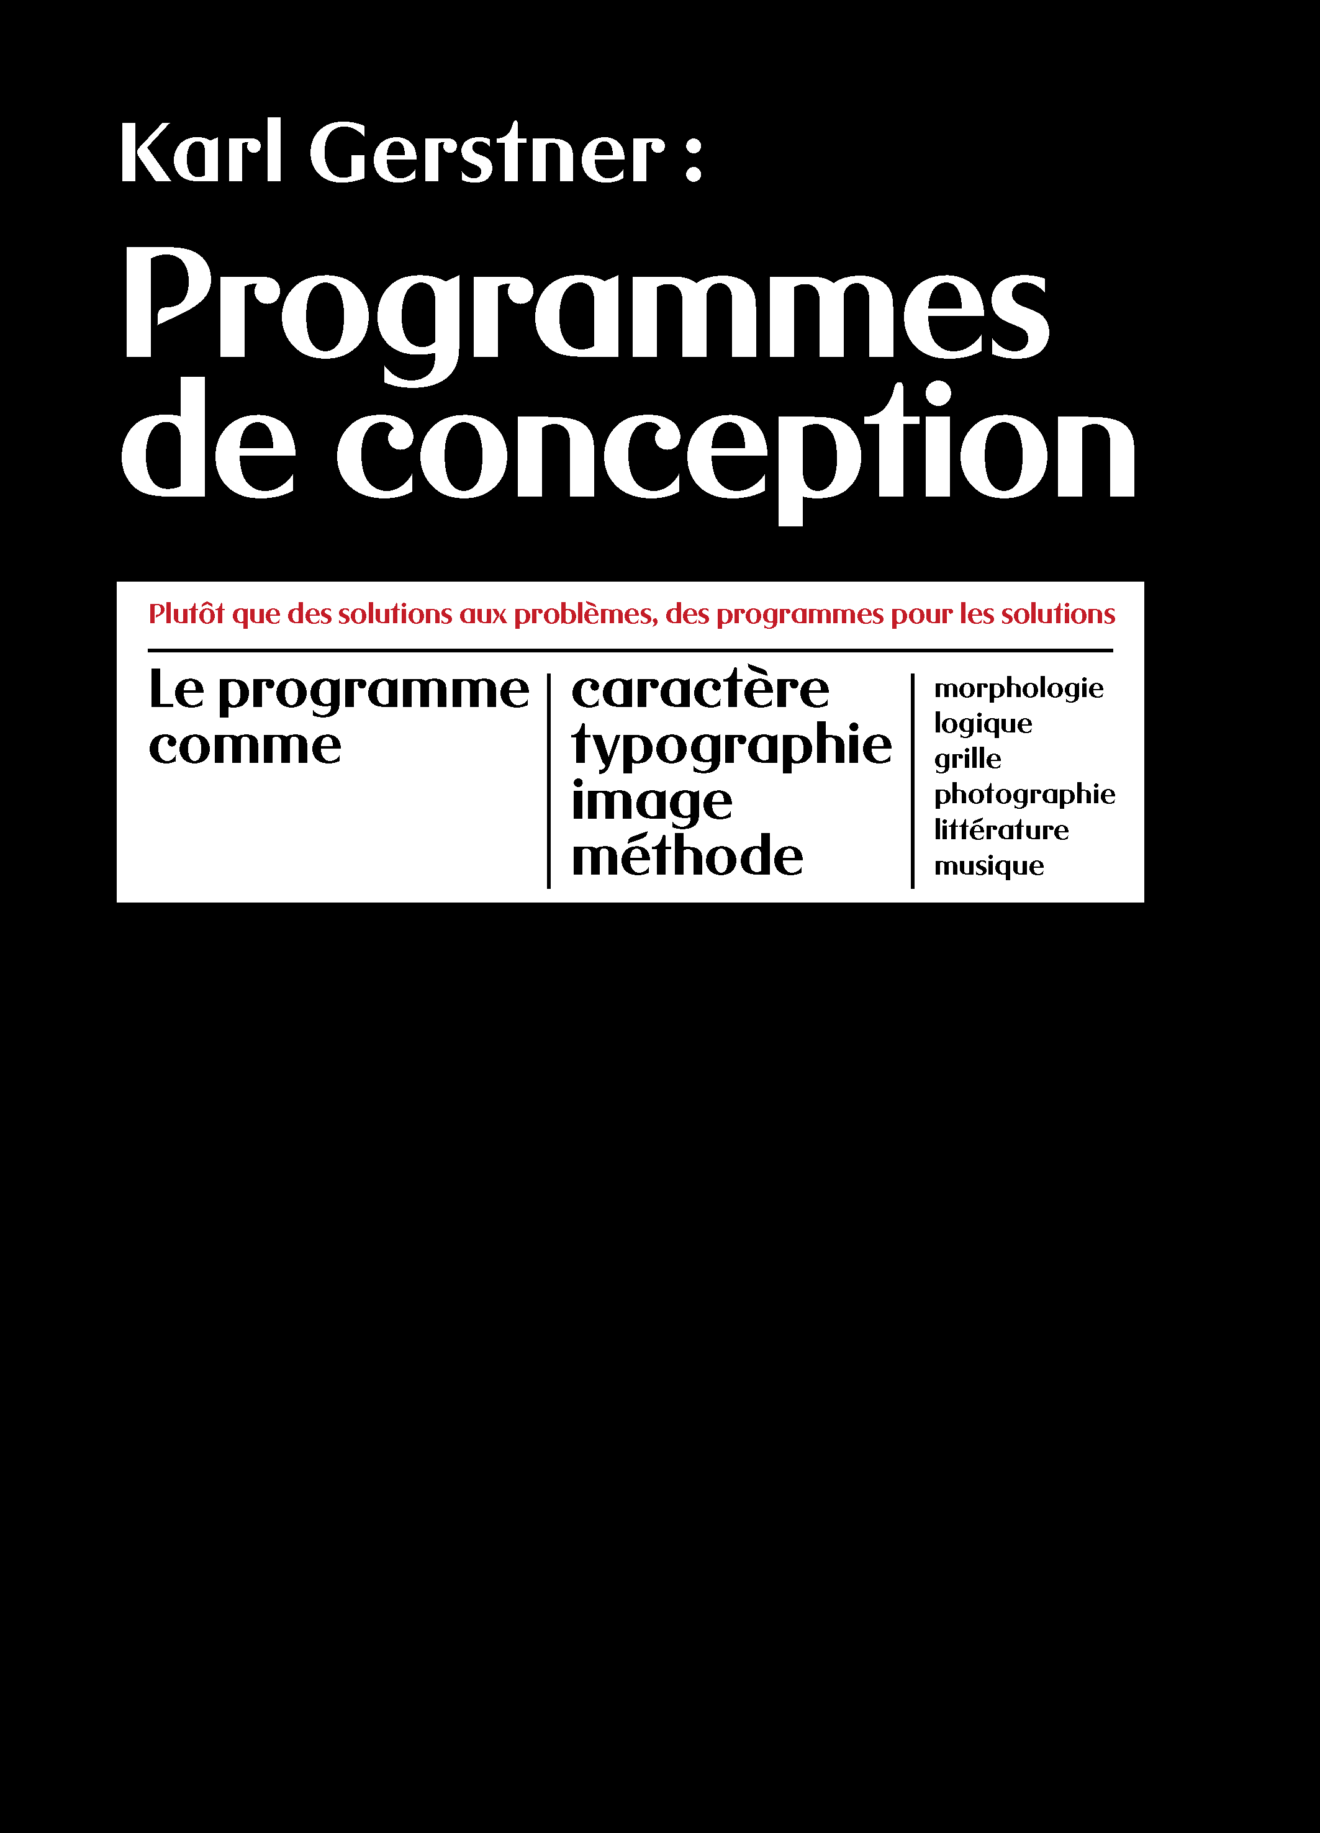 Programmes_de conception_Title